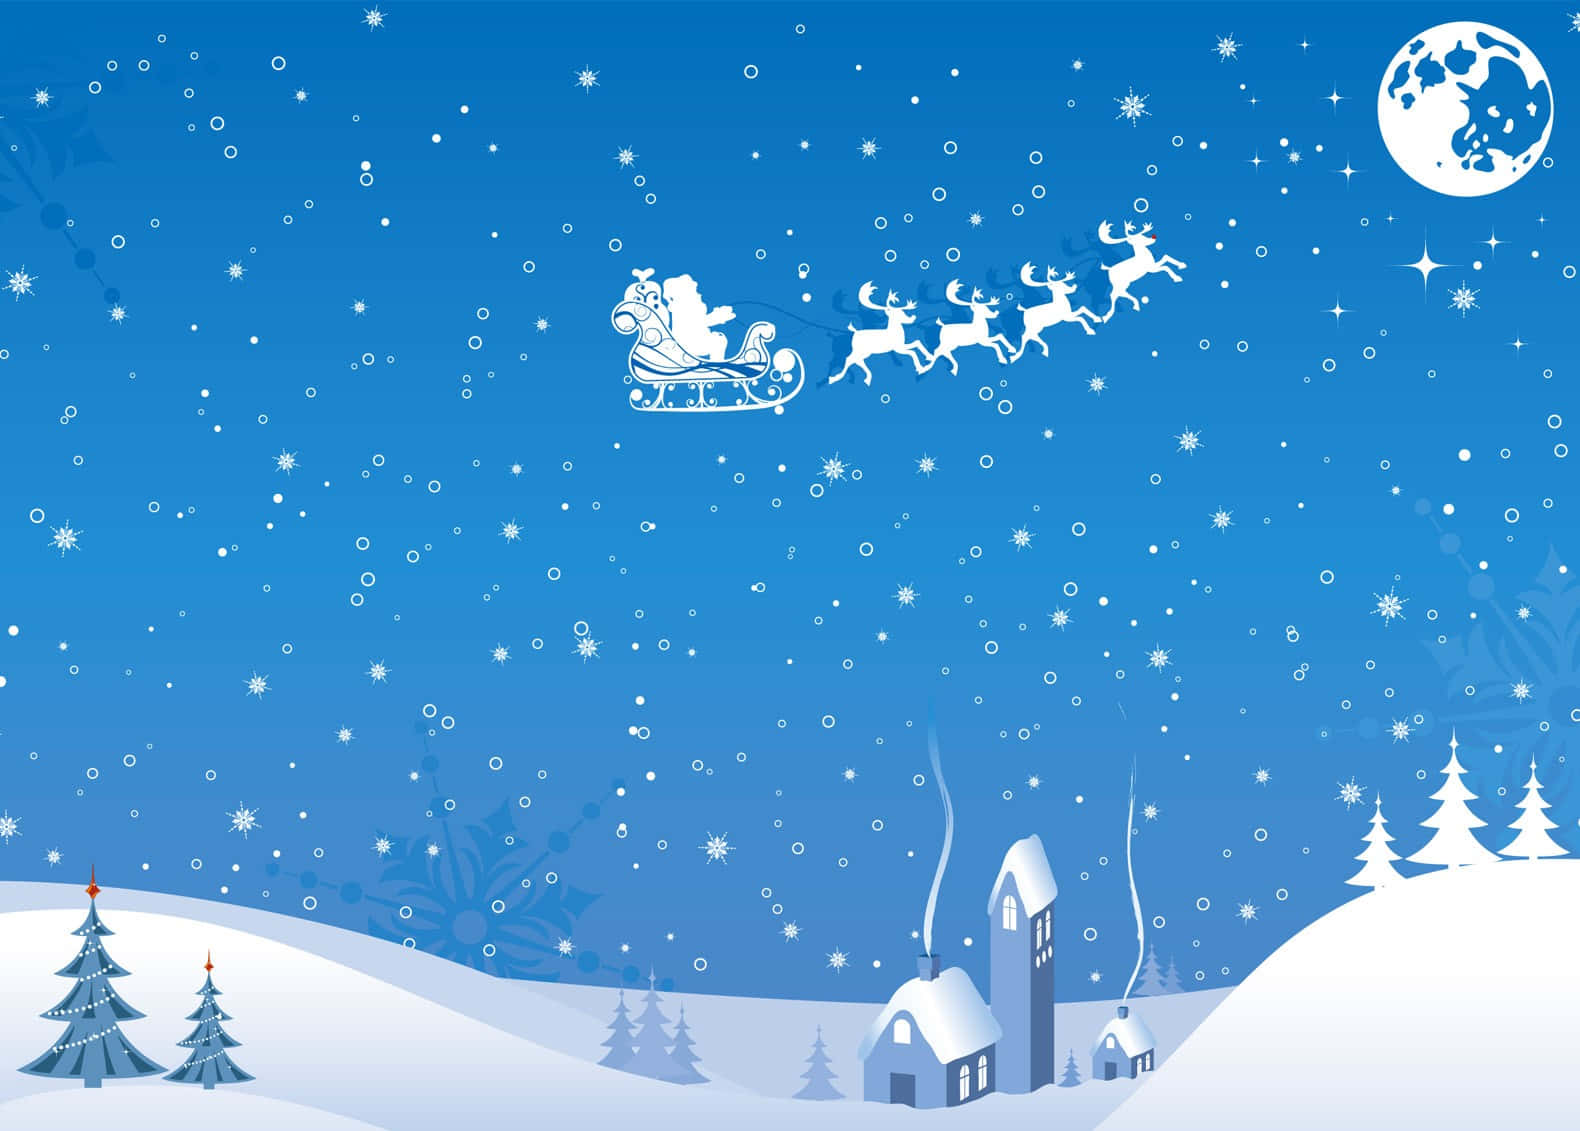 Feiernsie Die Fröhlichen Weihnachtsfeiertage Mit Einem Wunderschönen Hintergrund Für Weihnachten In Hoher Auflösung.